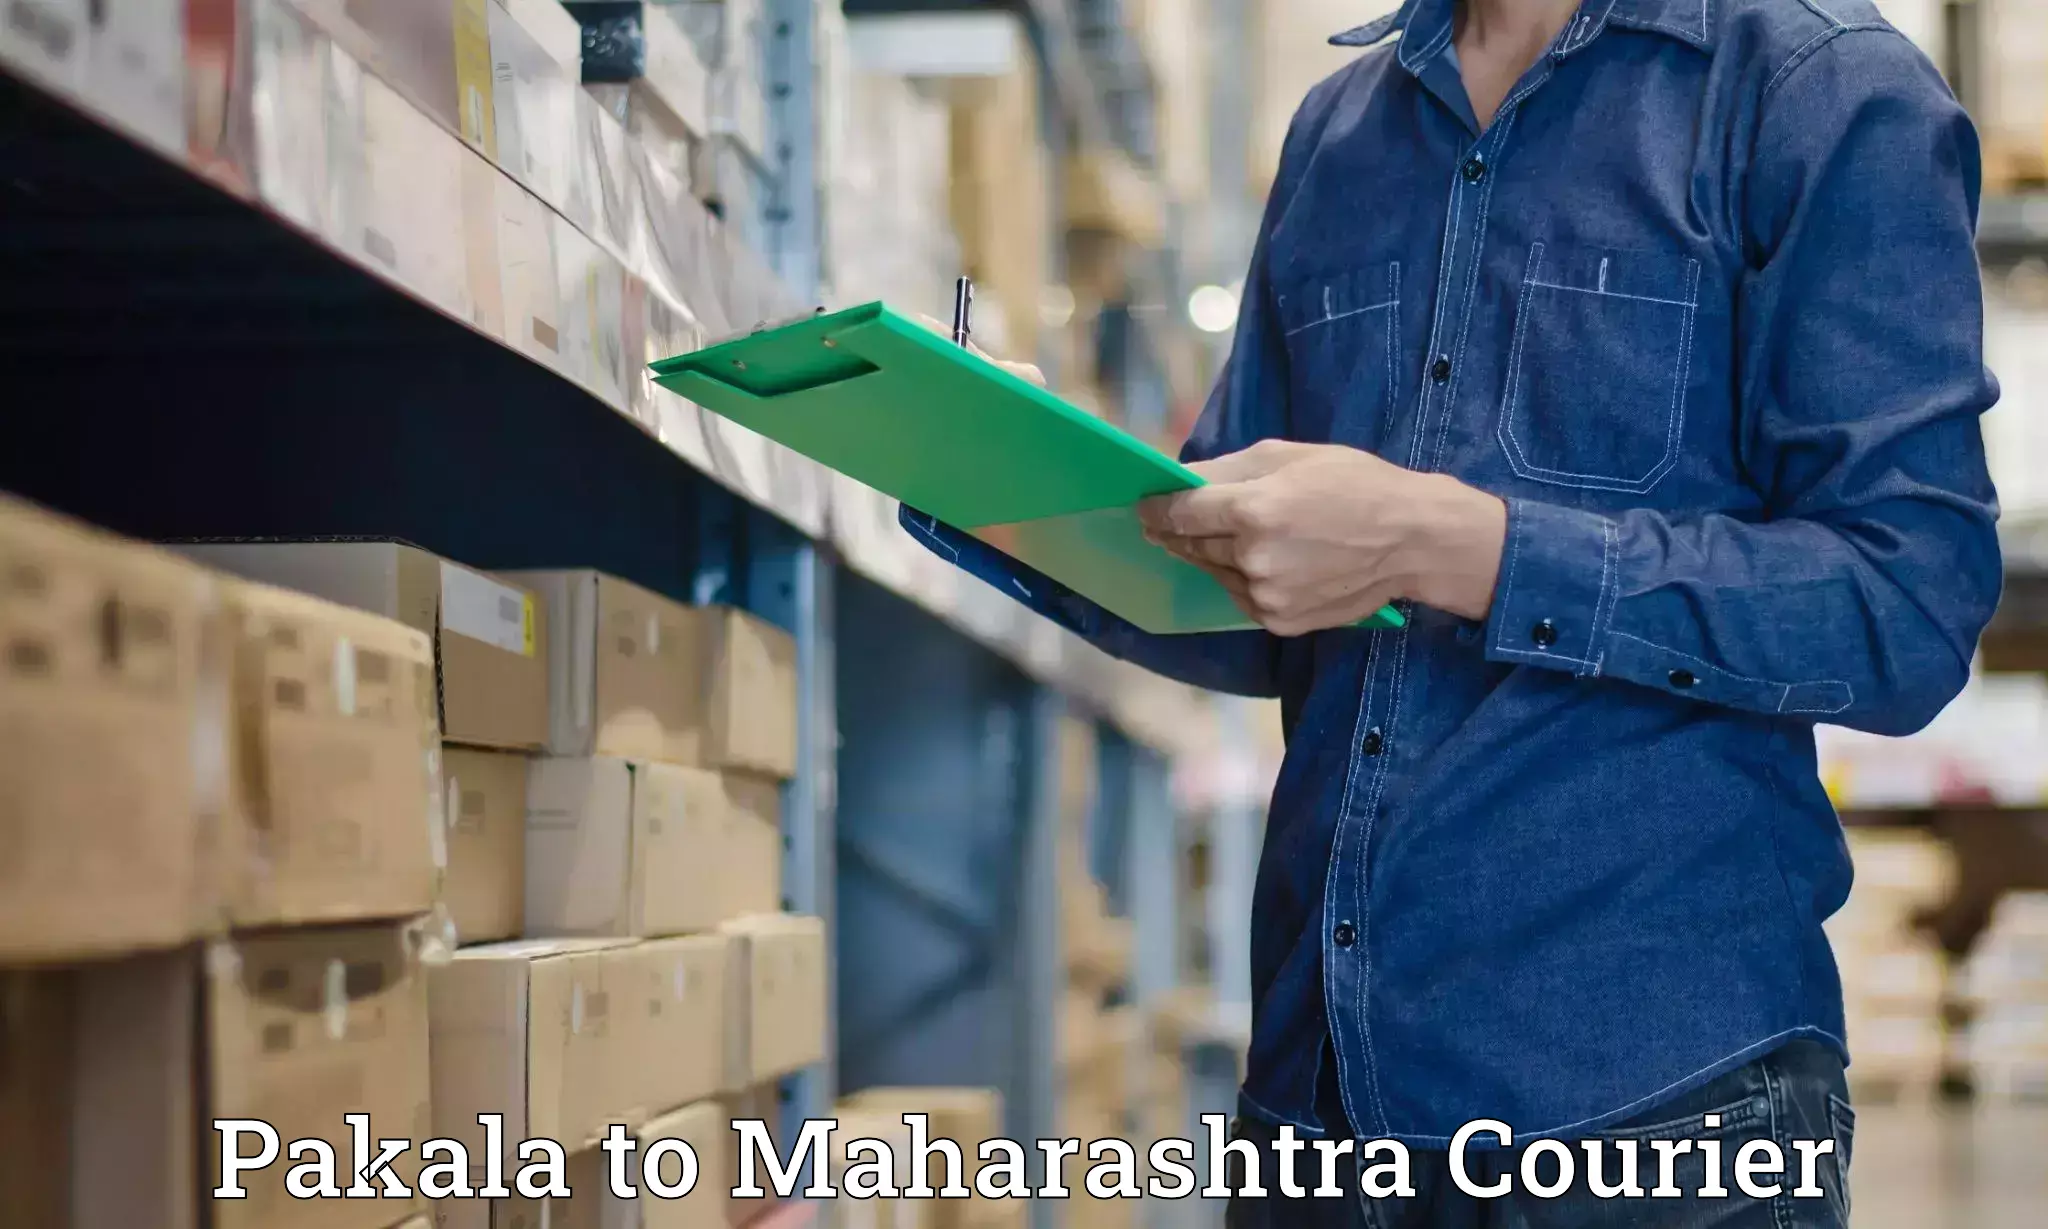 Expedited shipping methods Pakala to Shindkheda